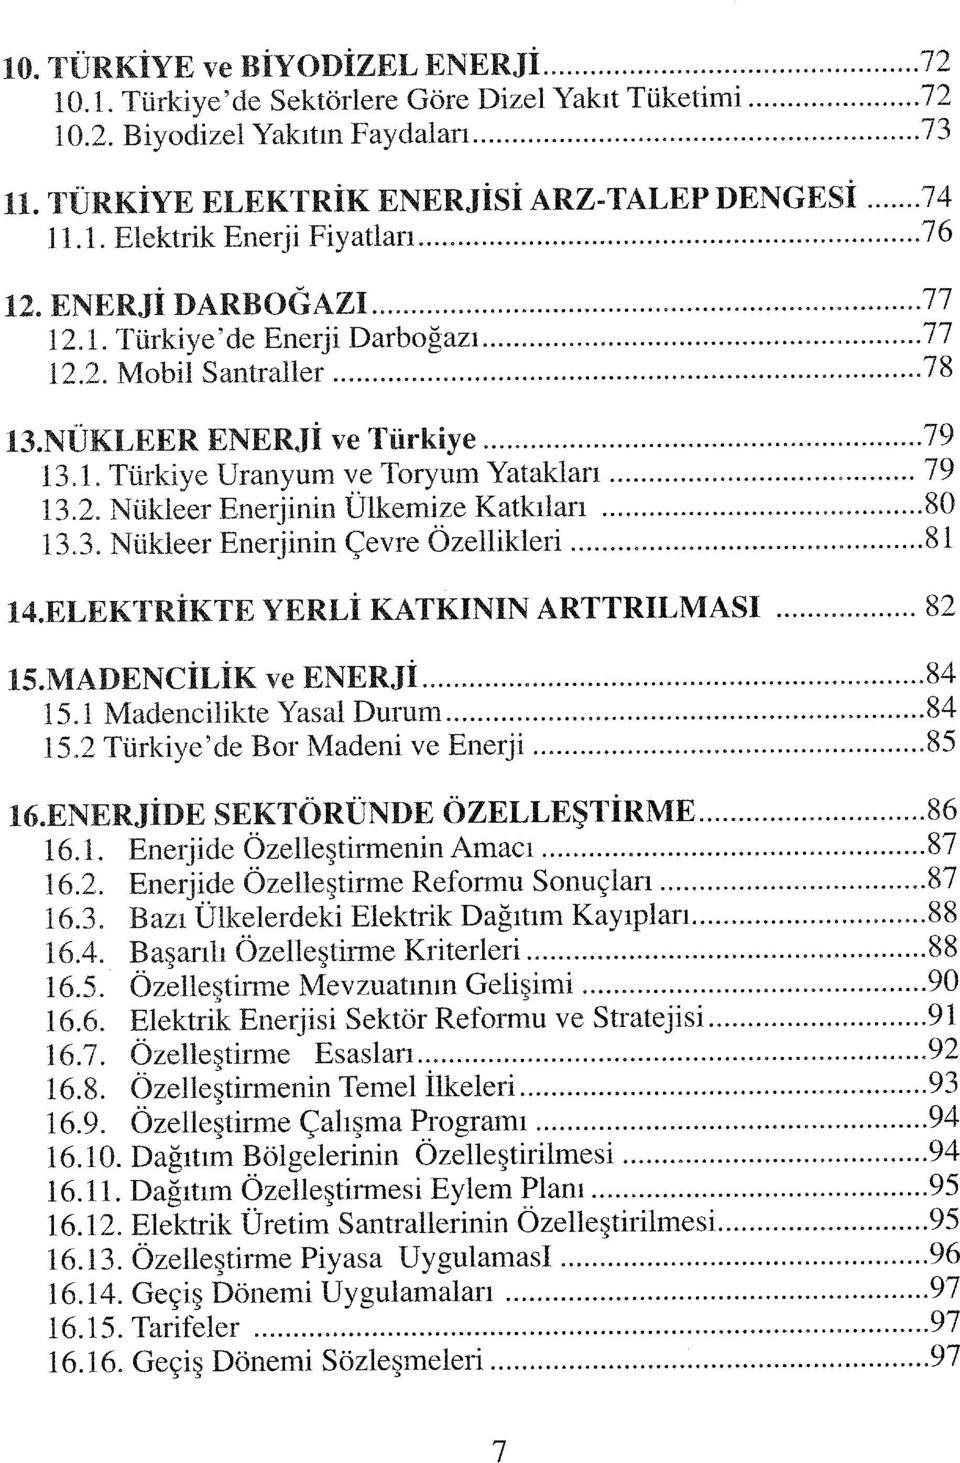 3. Nükleer Enerjinin Çevre Özellikleri 81 14.ELEKTRİKTE YERLİ KATKININ ARTTRILMASI 82 15.MADENCİLİK ve ENERJİ,... 84 15.1 Madencilikte Yasal Durum 84 15.2 Türkiye'de Bor Madeni ve Enerji...85 16.